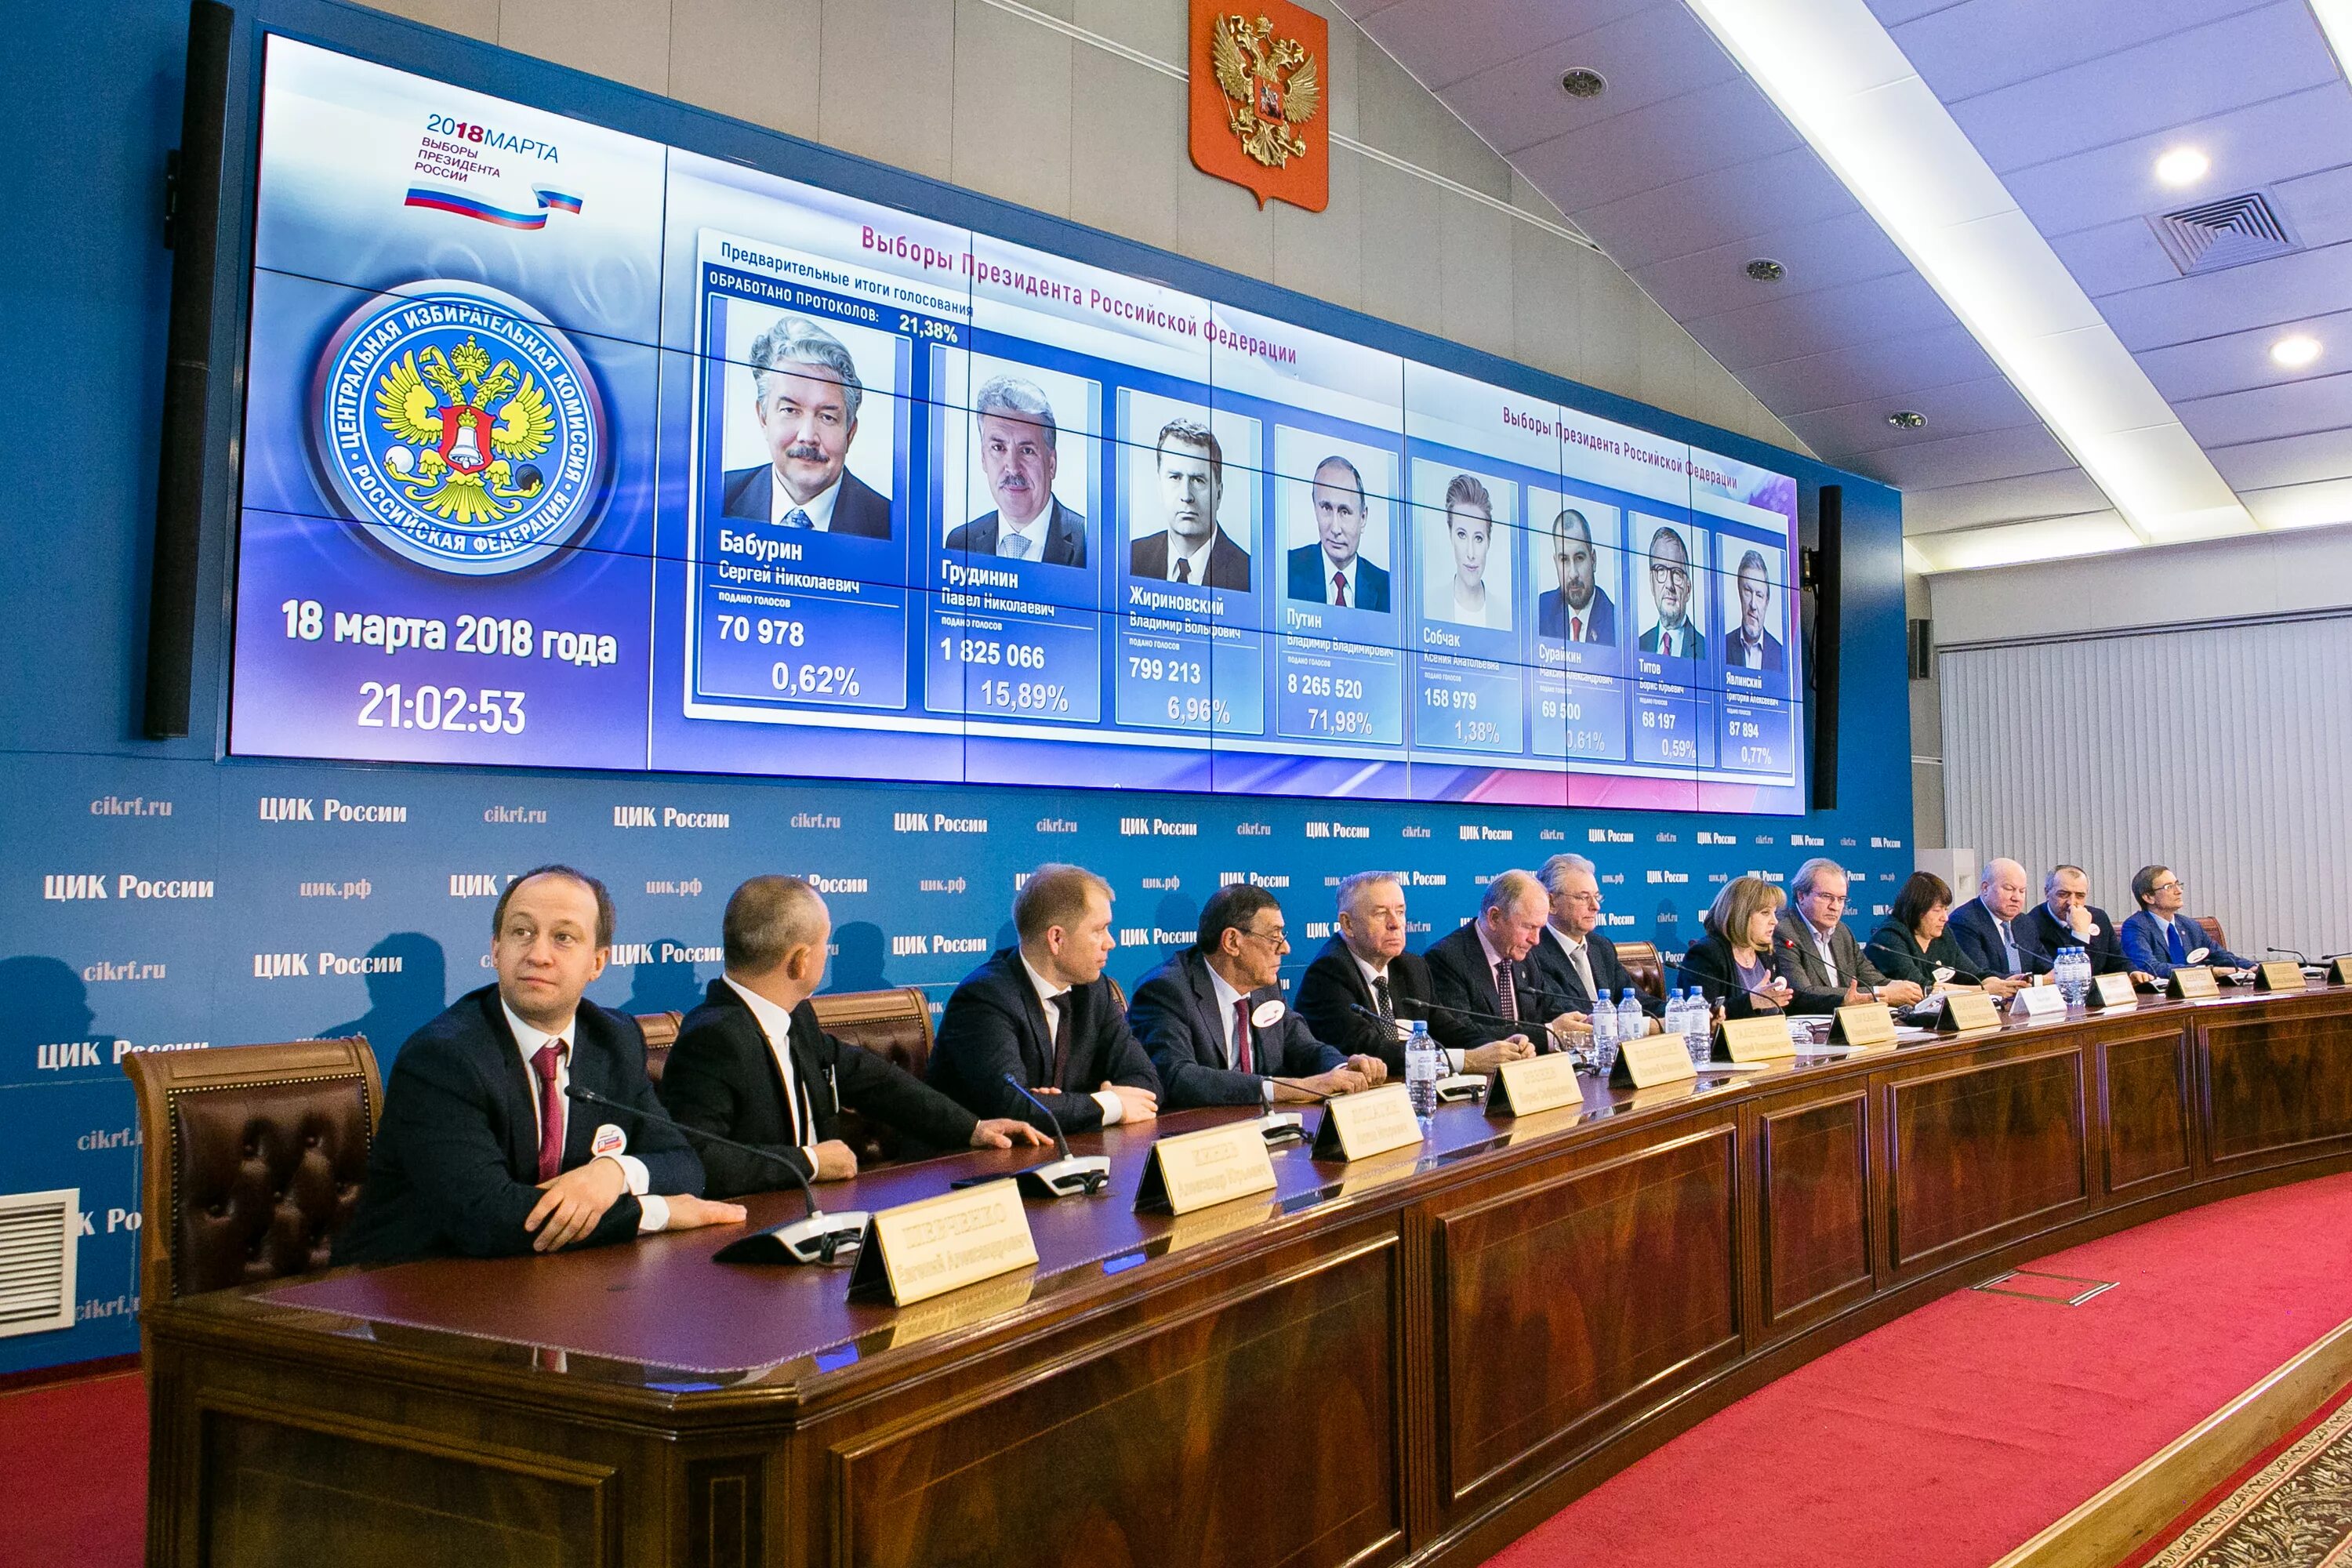 Выборы президента российской федерации назначает совет федерации